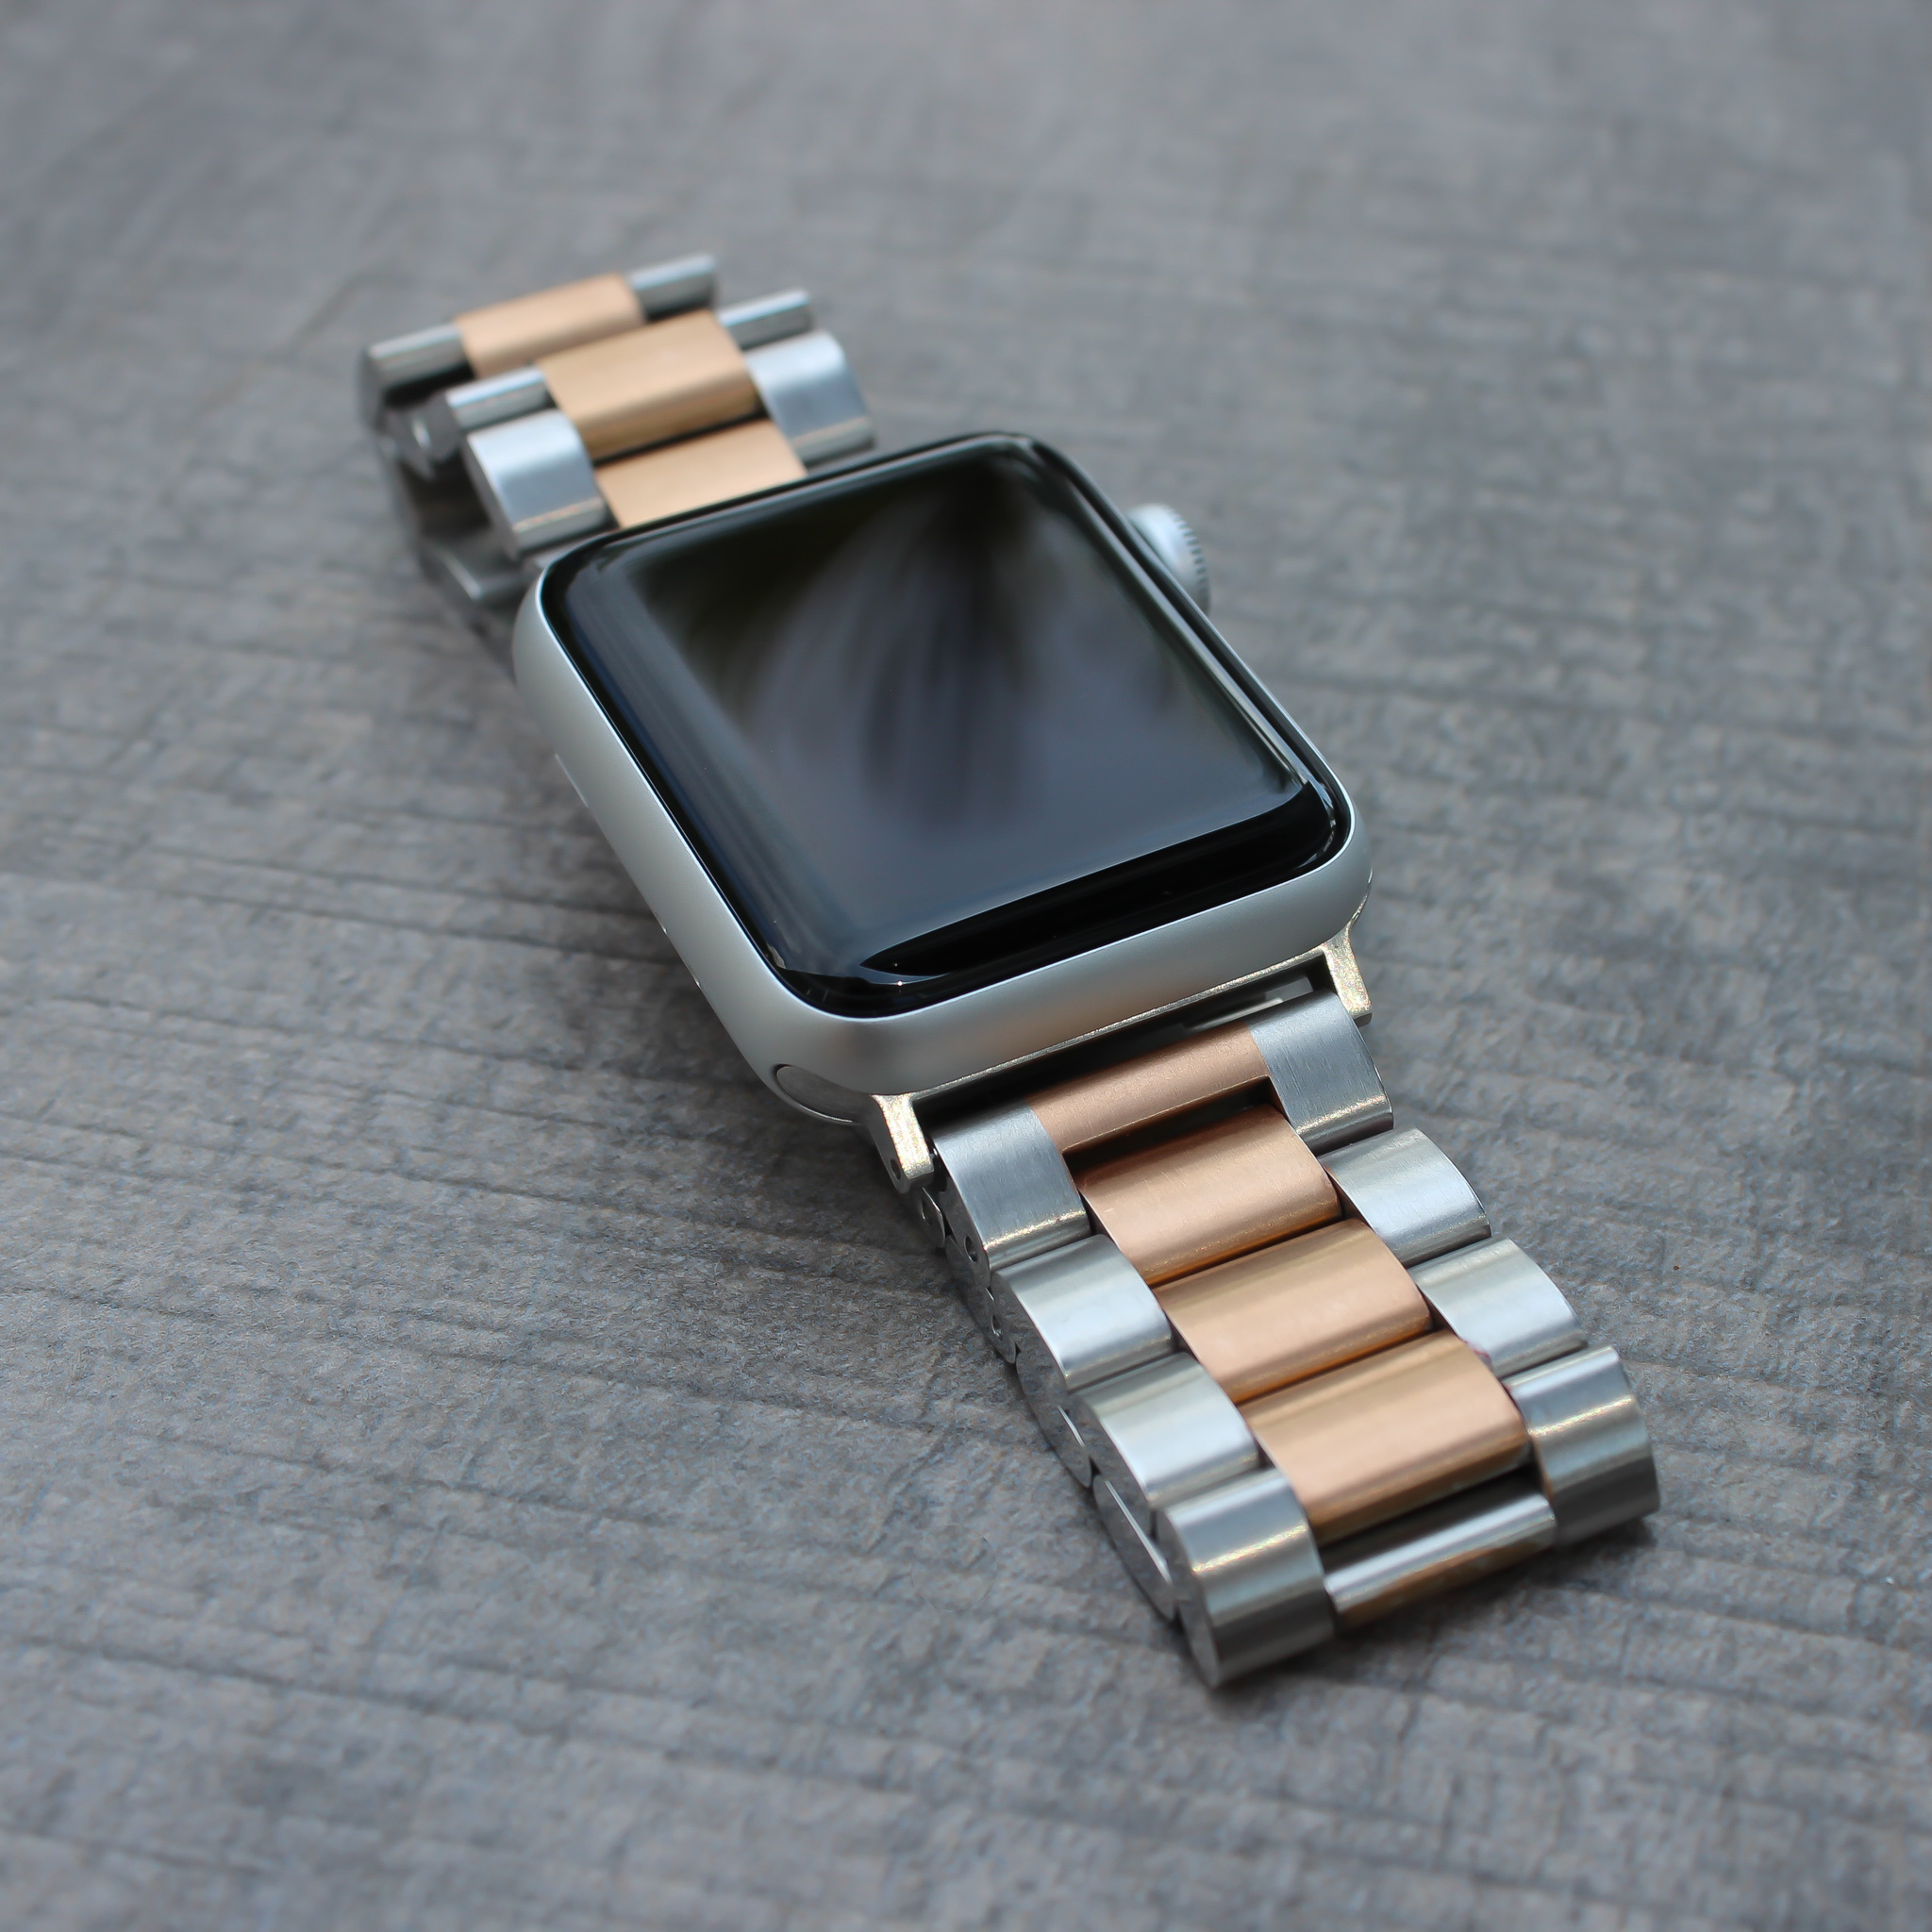 Cinturino a maglie in acciaio con perline per Apple Watch - argento oro rosa